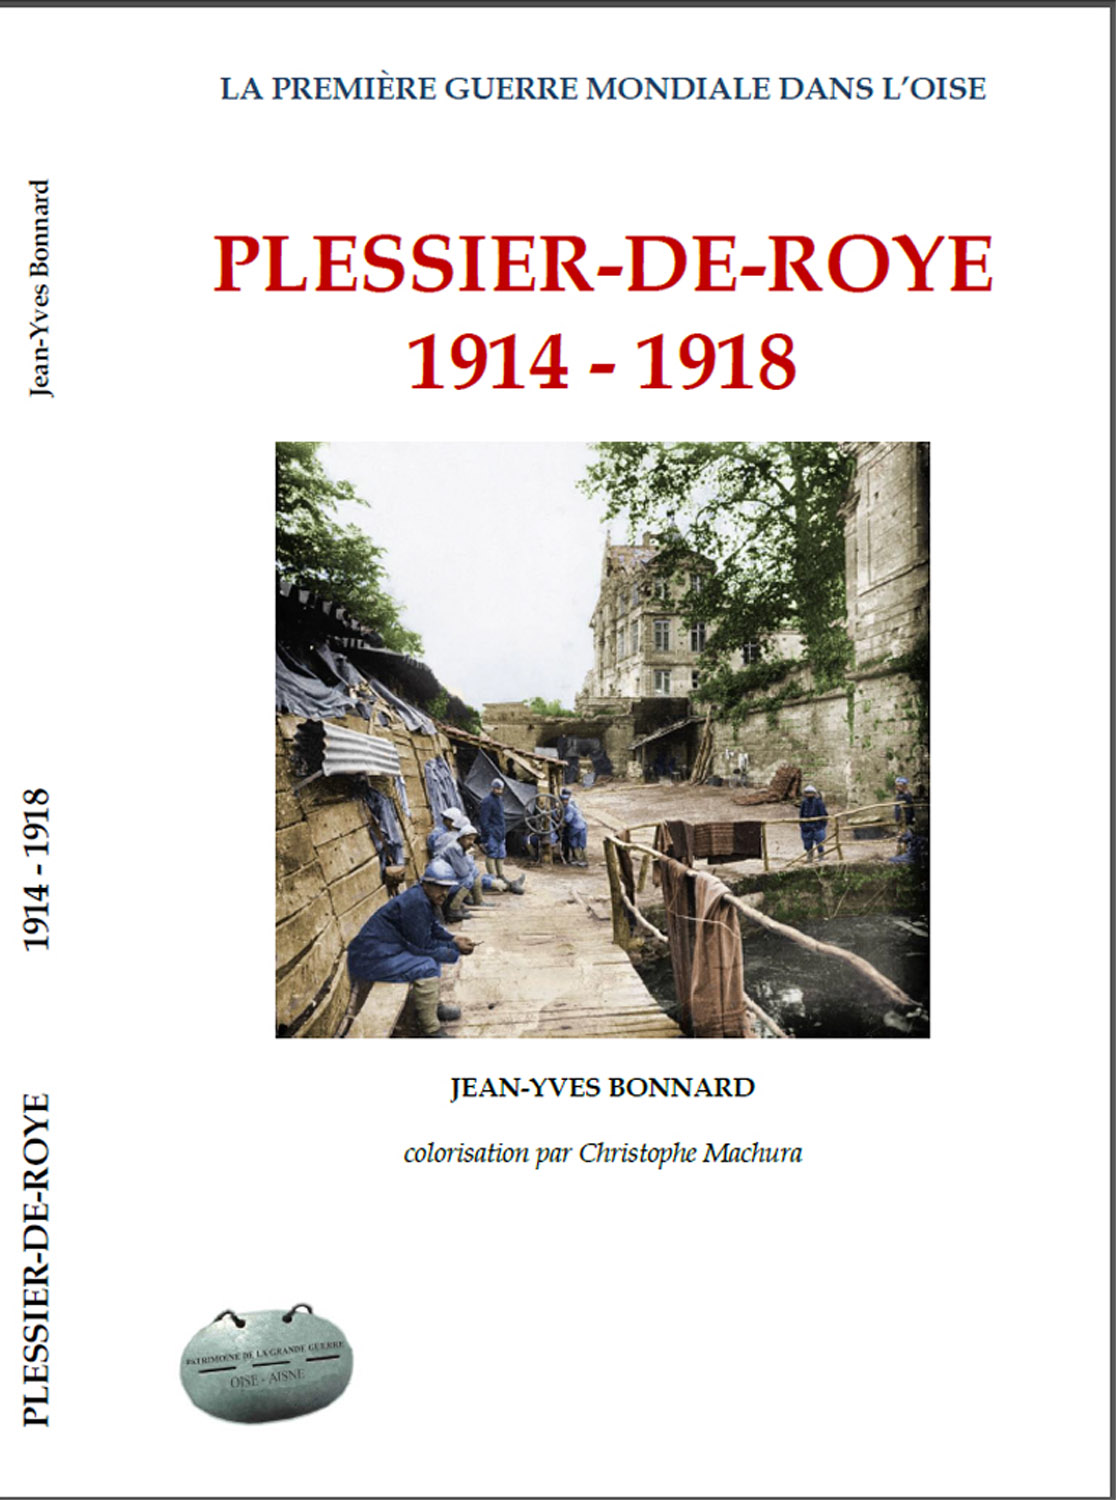 Plessier-de-Roye (02).jpg